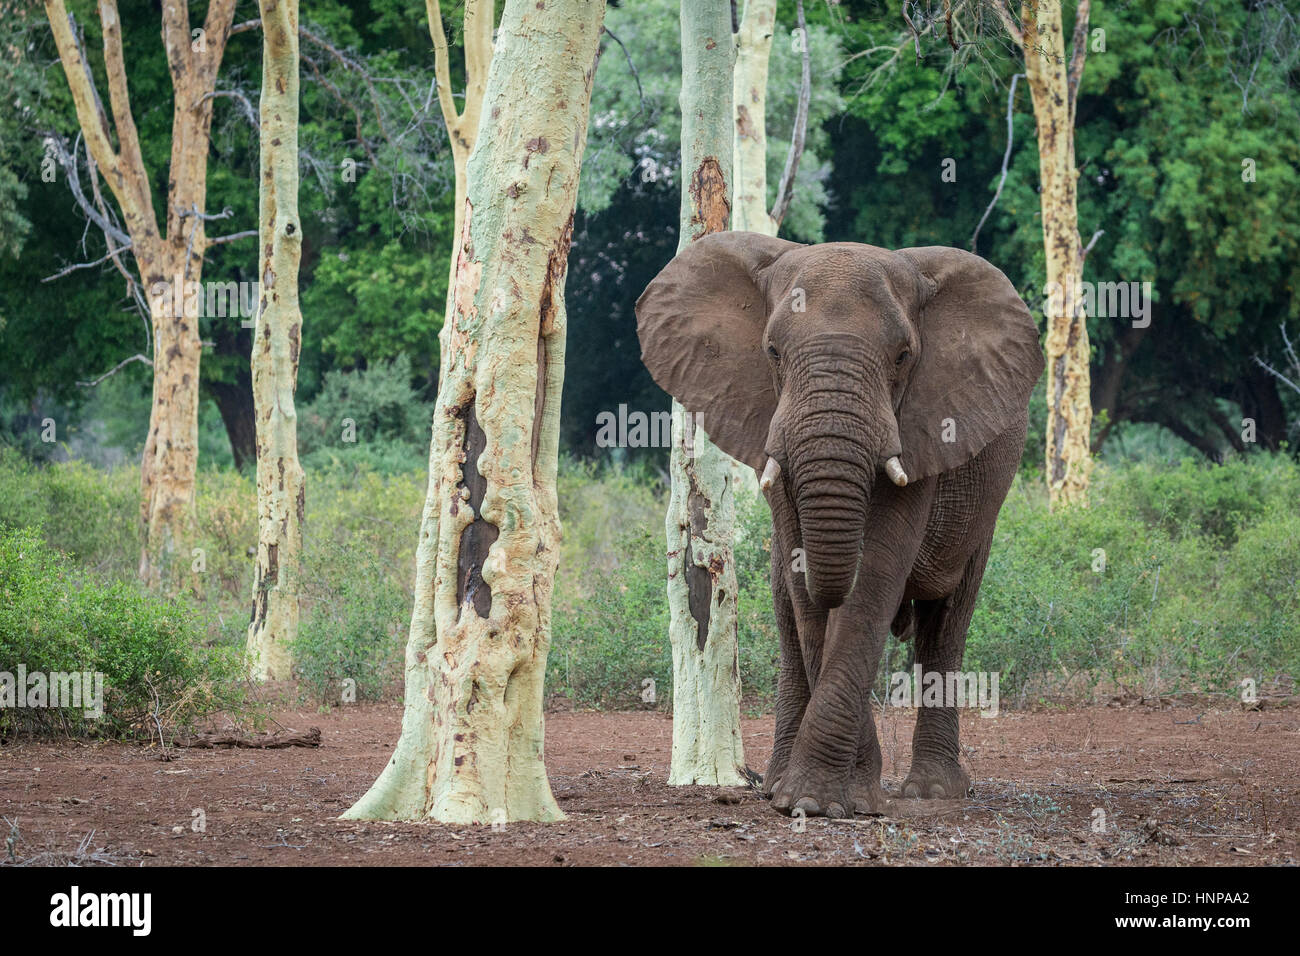 Elefante africano (Loxodonta africana), el Parque Nacional Kruger, República de Sudáfrica. Foto de stock